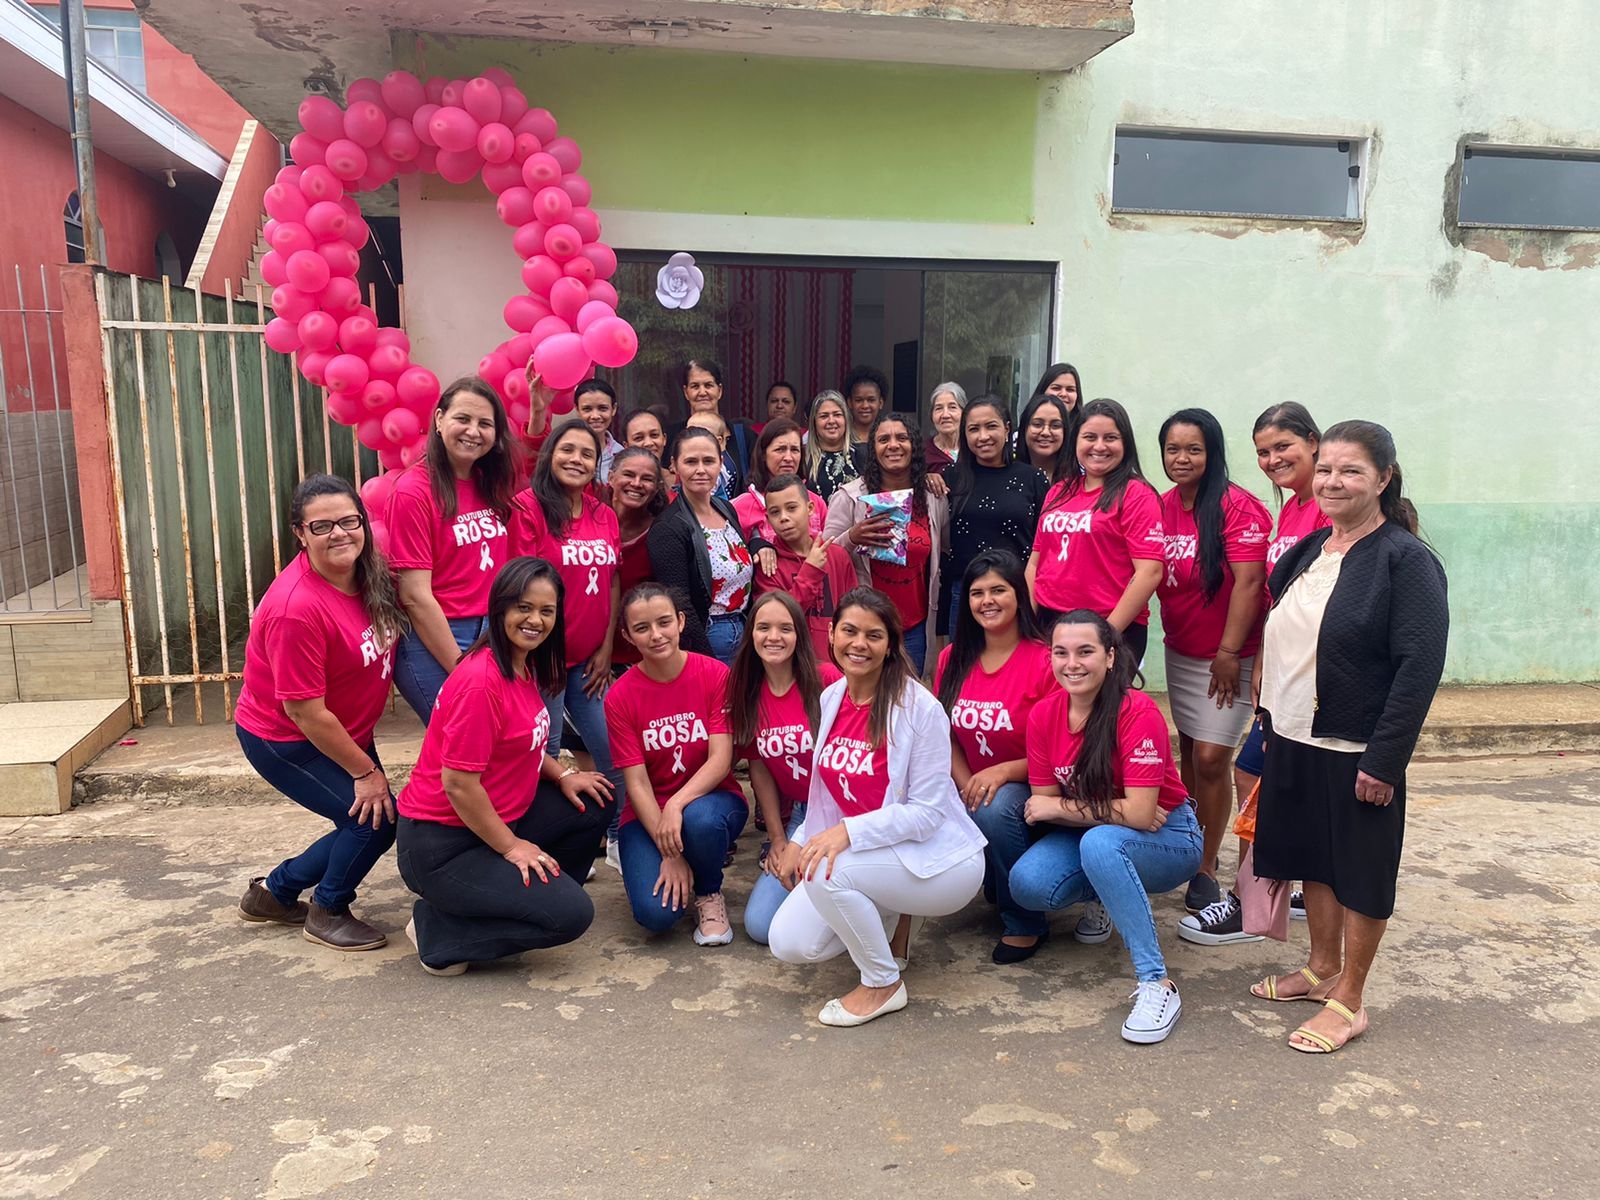 Portal Caparaó - Drogaria Pacheco promove ações no Outubro Rosa em Manhuaçu